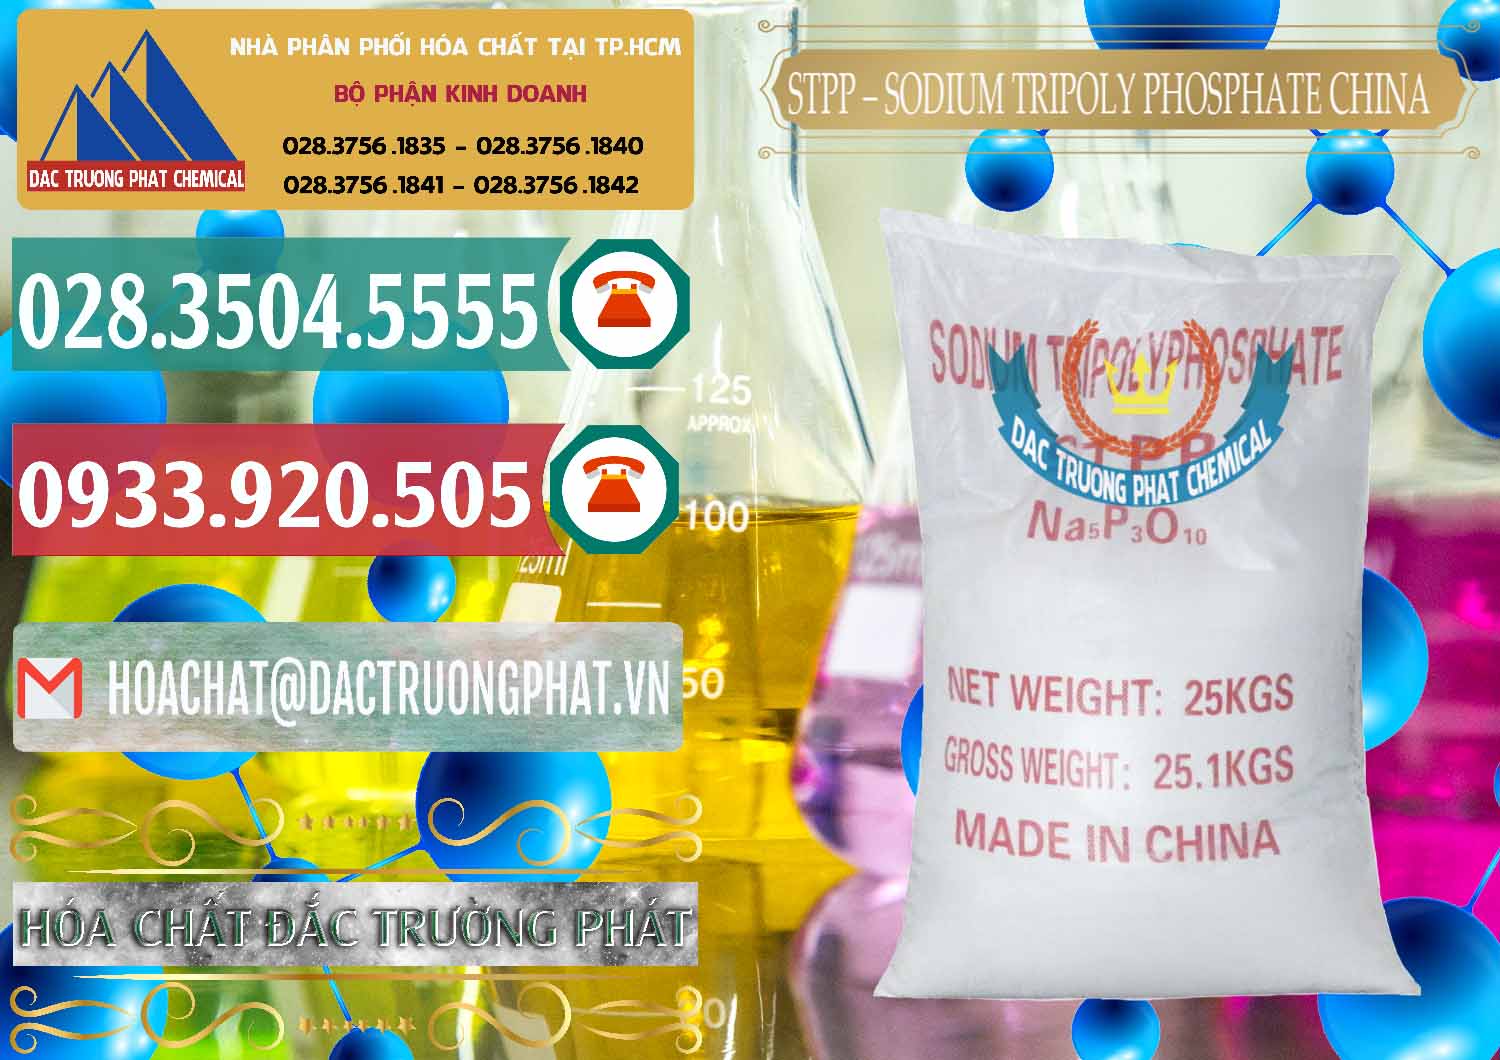 Đơn vị bán và cung cấp Sodium Tripoly Phosphate - STPP 96% Chữ Đỏ Trung Quốc China - 0155 - Nhà cung cấp - nhập khẩu hóa chất tại TP.HCM - muabanhoachat.vn